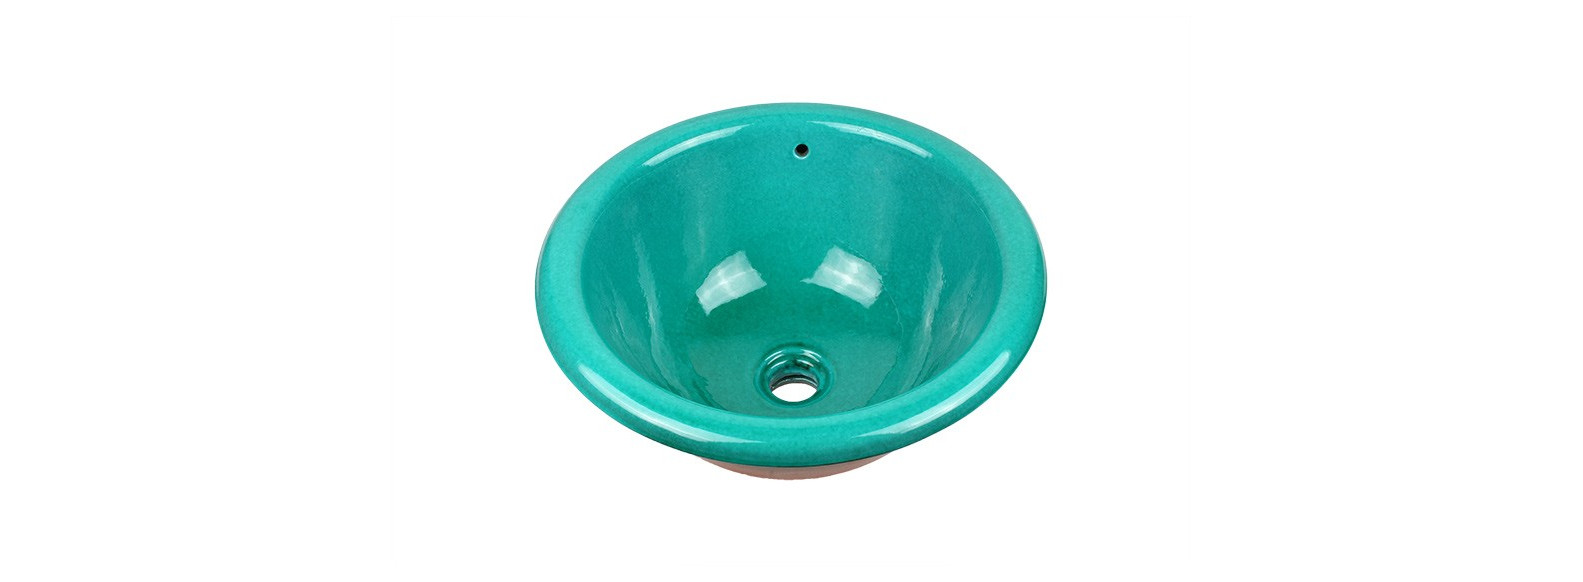 vasque a encastrer céramique turquoise